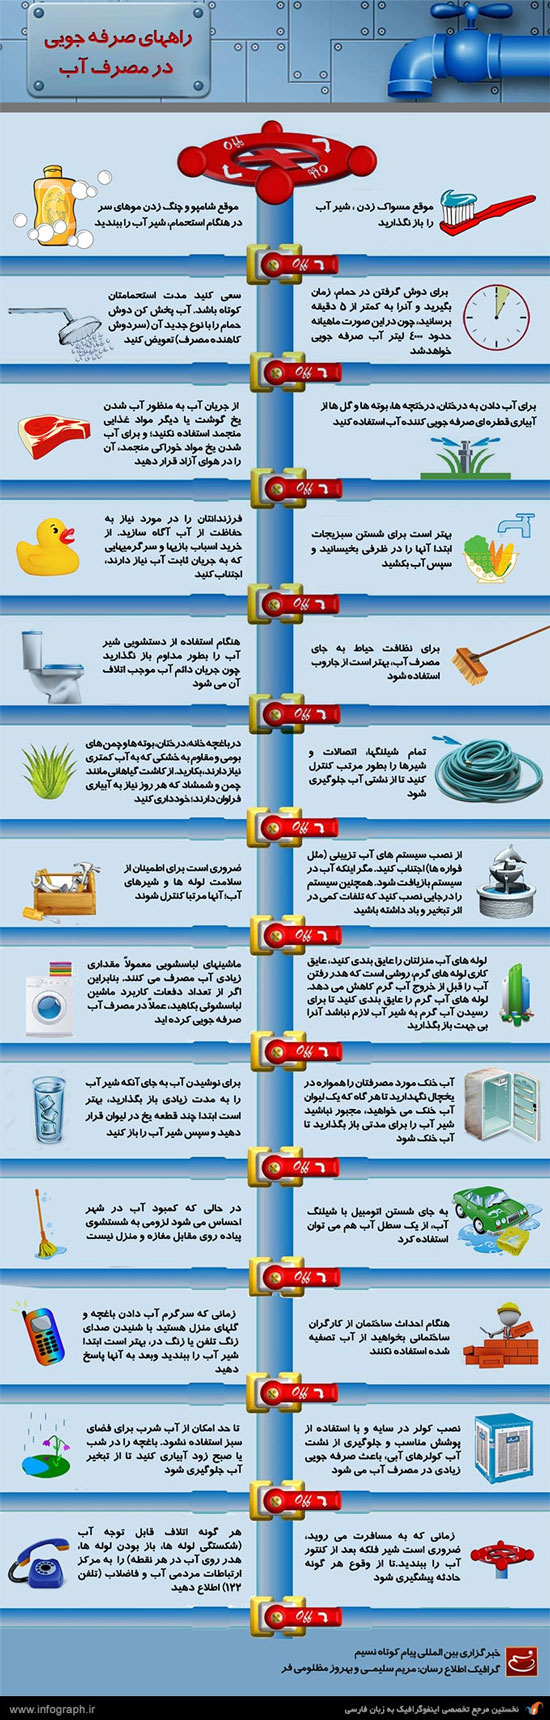 راه های صرفه جویی در مصرف آب